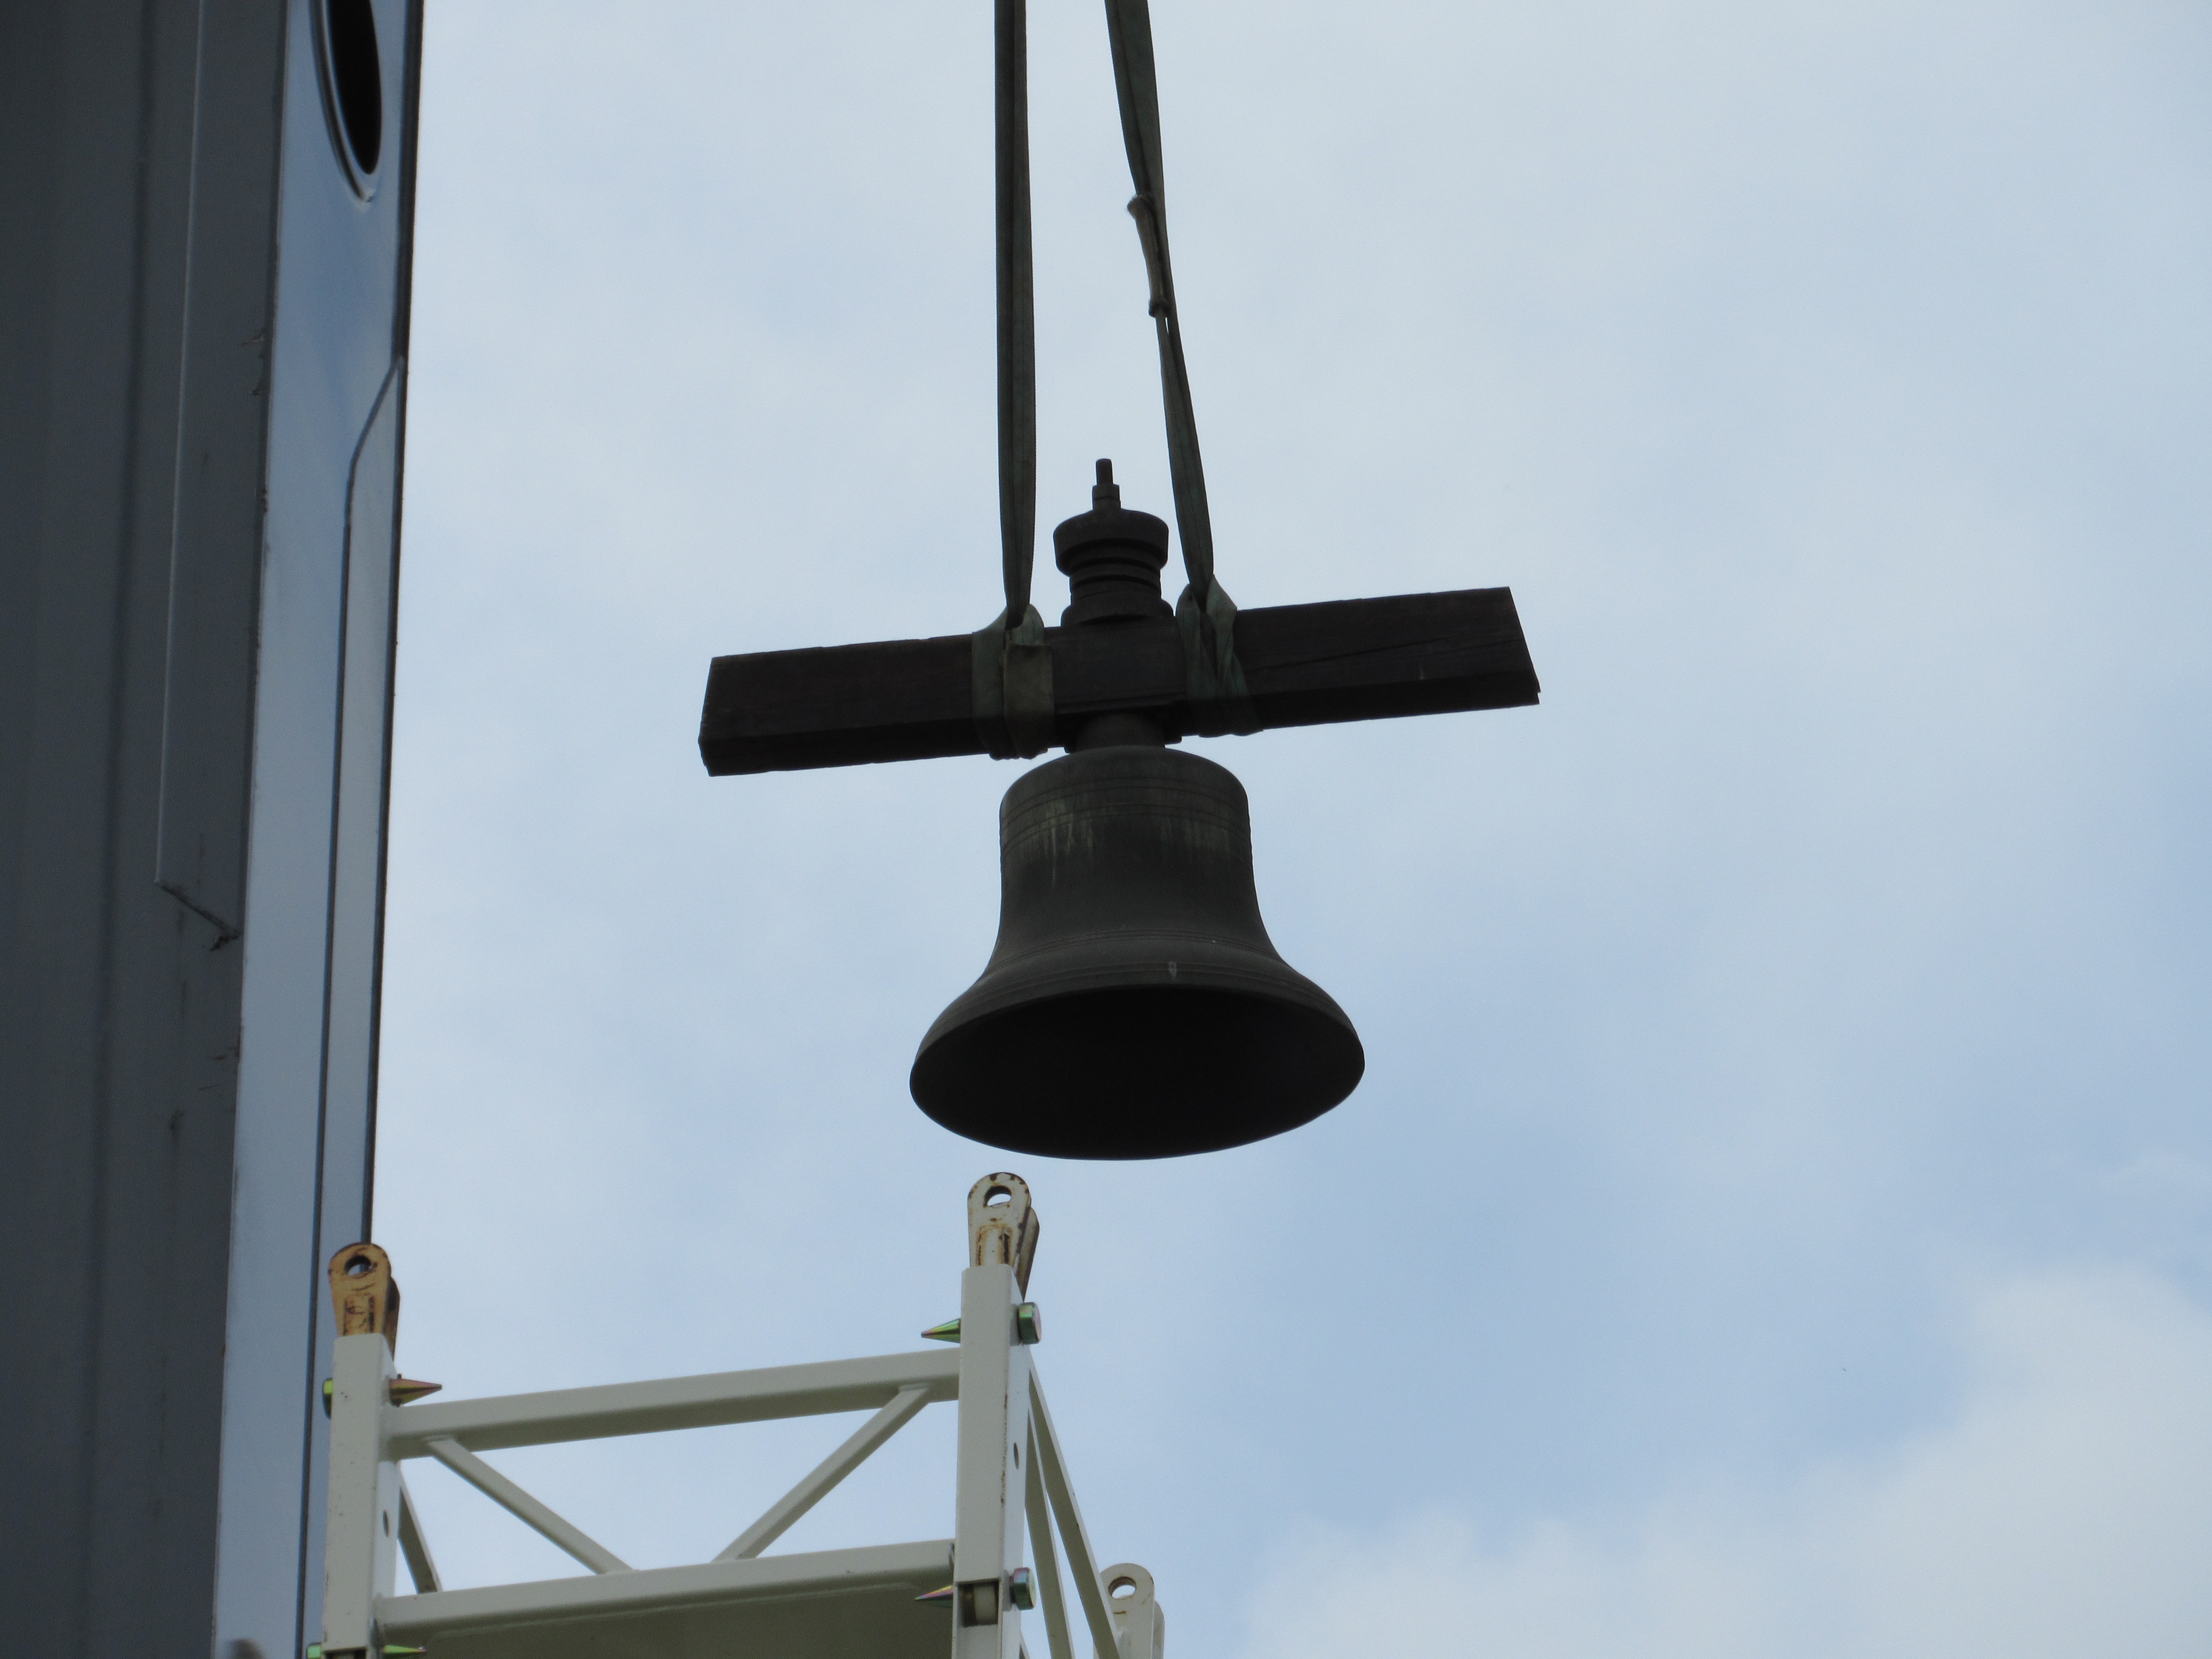 Church Bell Restoration Begins